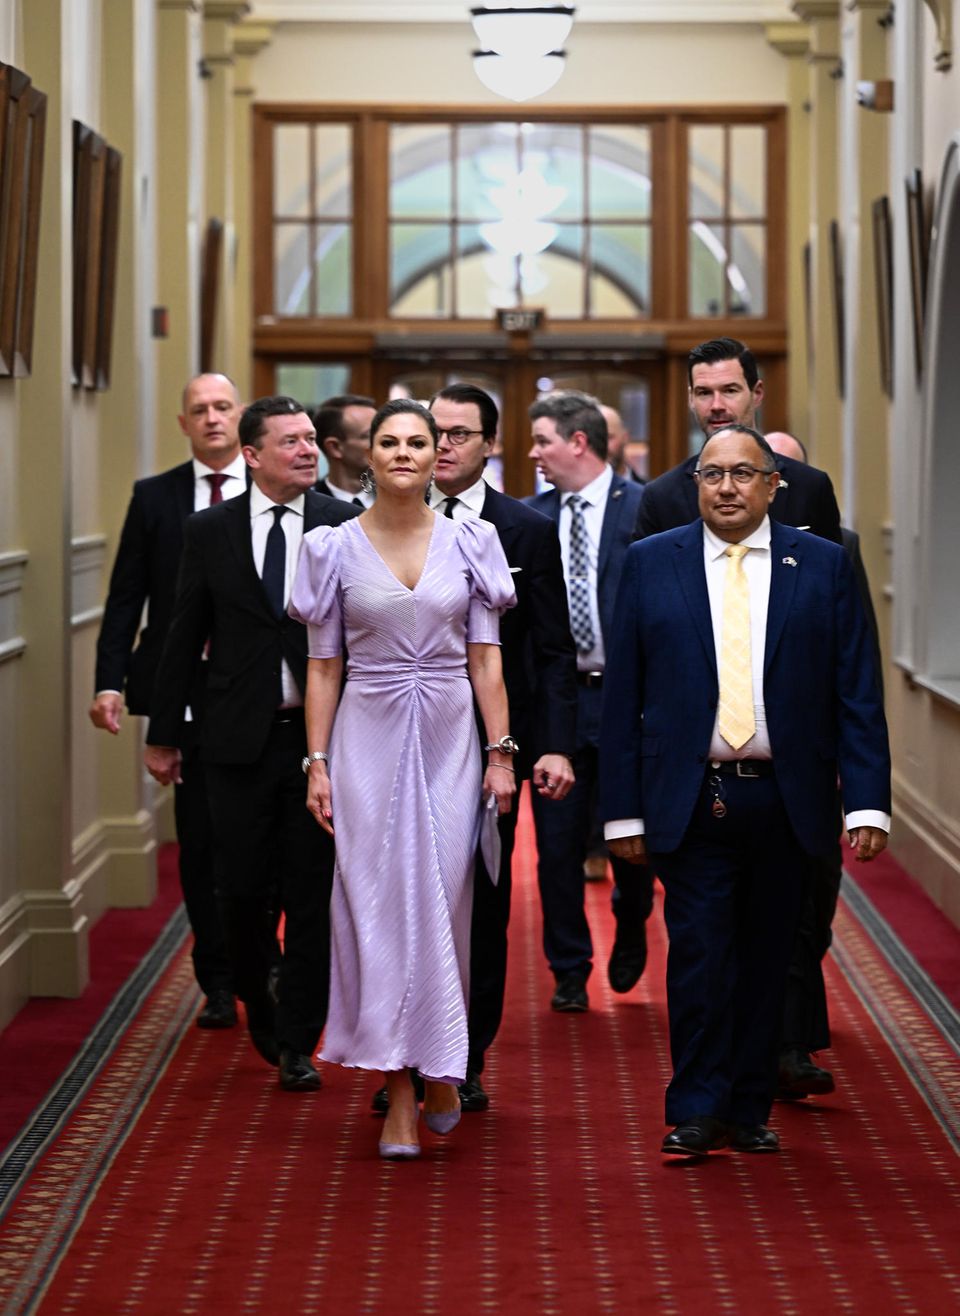 Prinzessin Victoria hat den skandinavischen Stil für ihren Besuch im Parlament in Wellington perfektioniert. So ist ihr dezenter Look selbstbewusst, feminin und modern zugleich. Ihr zarter Fliedertraum besticht durch Puffärmel, die fließende Passform und die unkonventionelle Raffung am Bauch. 